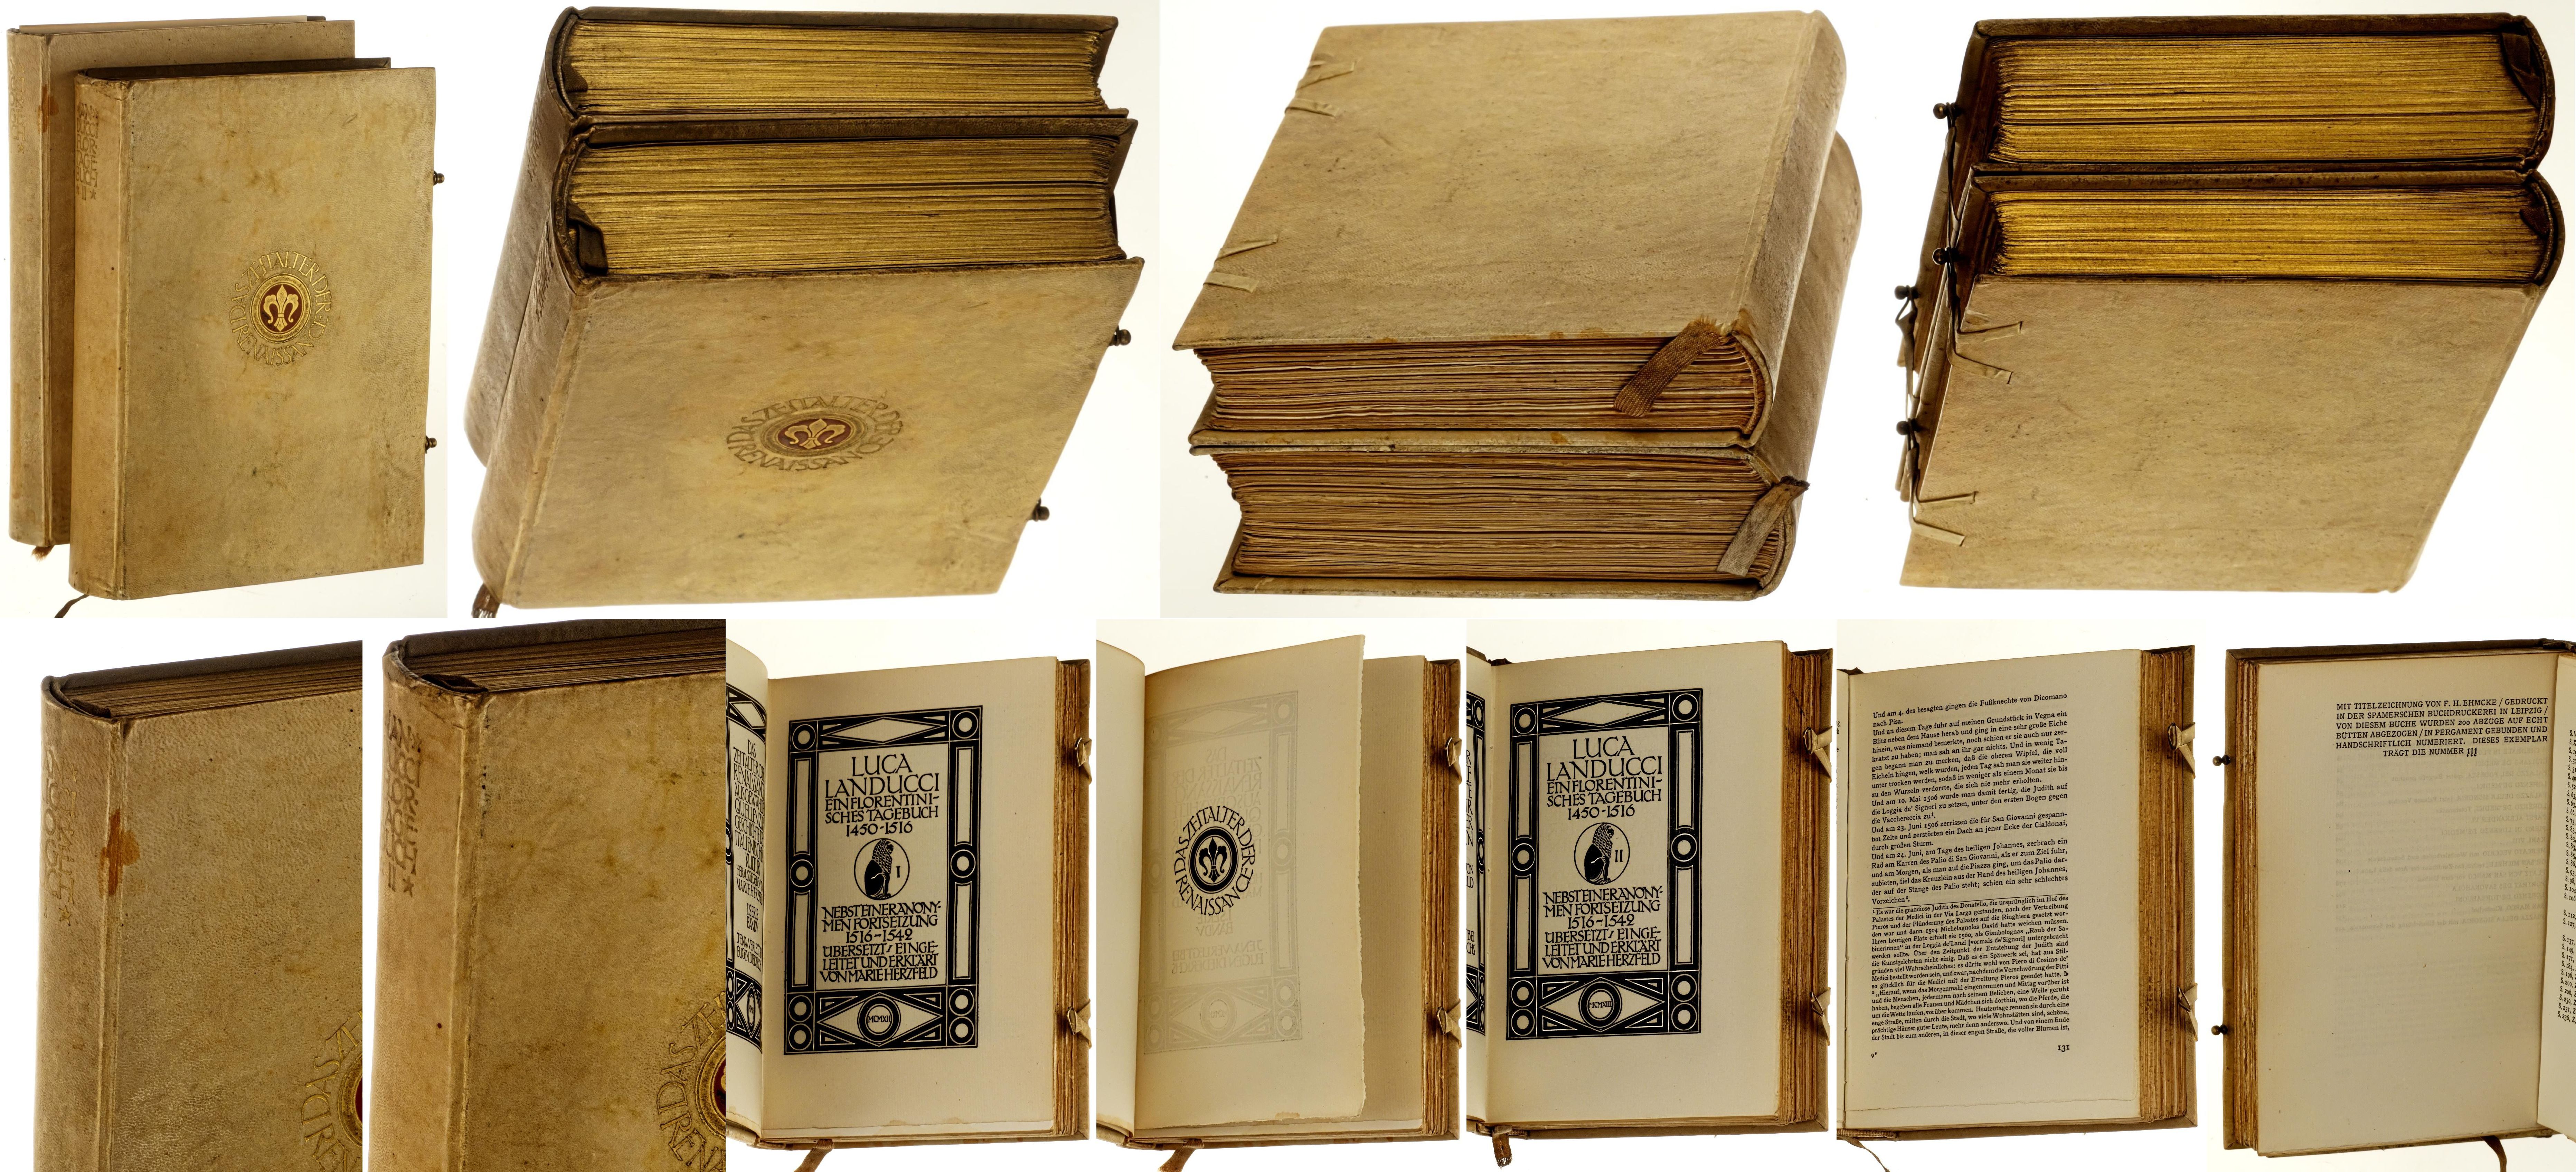 Landucci, Luca:  Ein florentinisches Tagebuch, 1450 - 1516. Nebst einer anonymen Fortsetzung, 1516 - 1542. Übersetzt, eingeleitet und erklärt von Marie Herzfeld. 